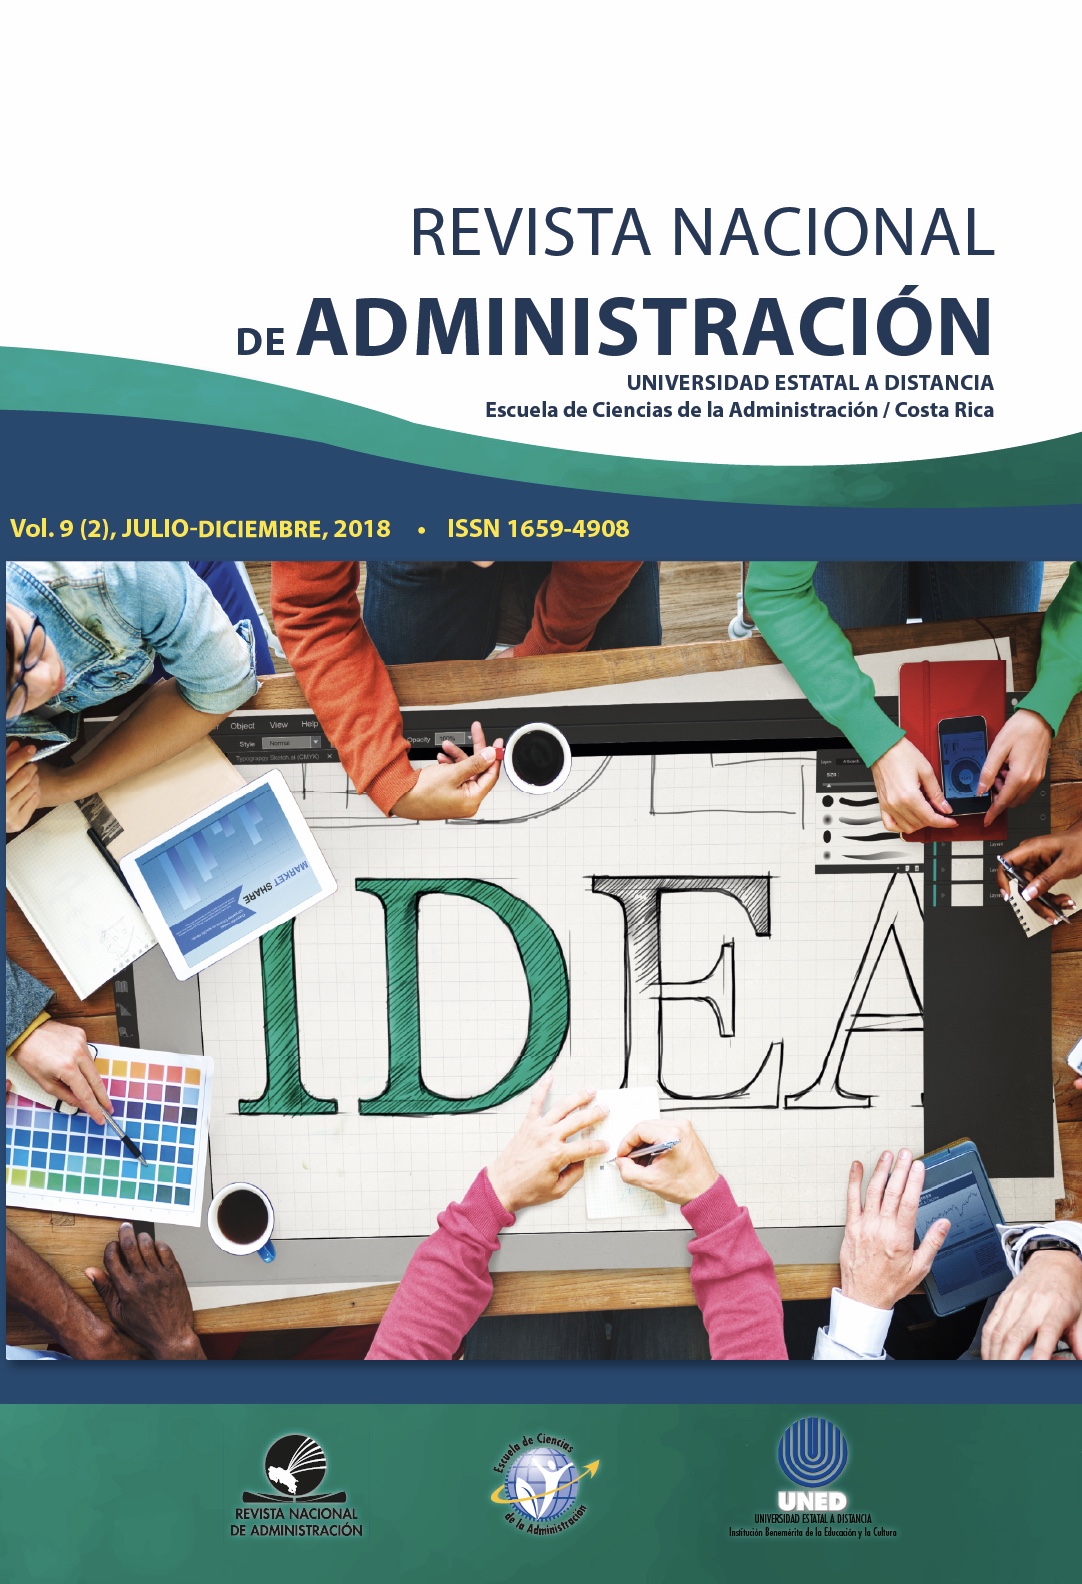 					View Vol. 9 No. 2 (2018): Revista Nacional de Administración
				